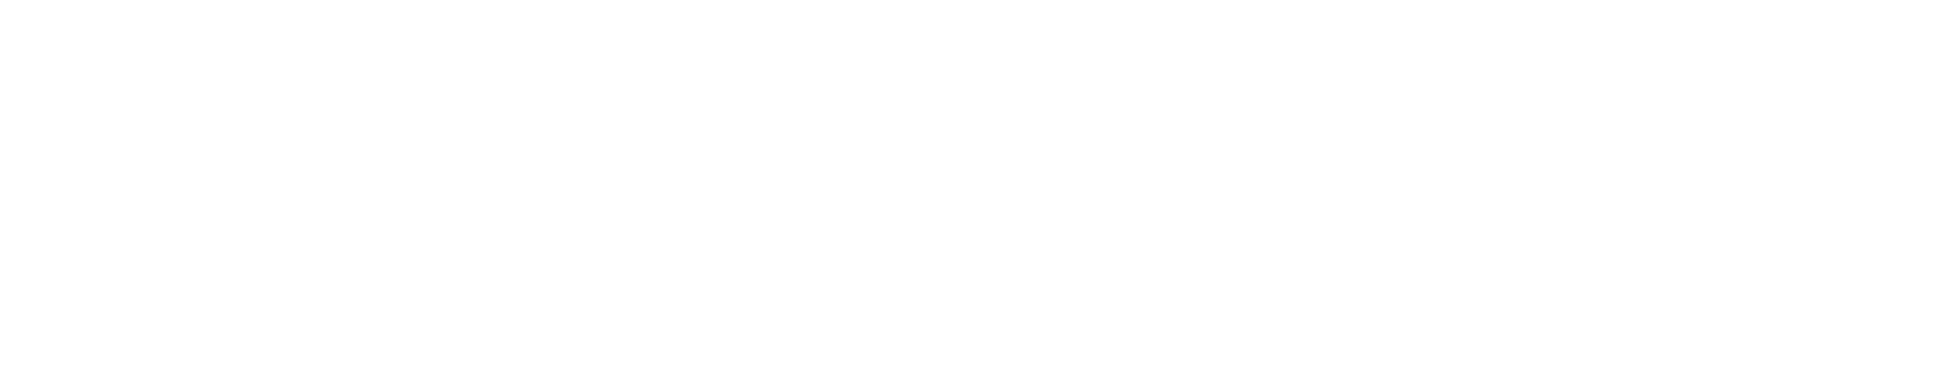 Hairburst  logo